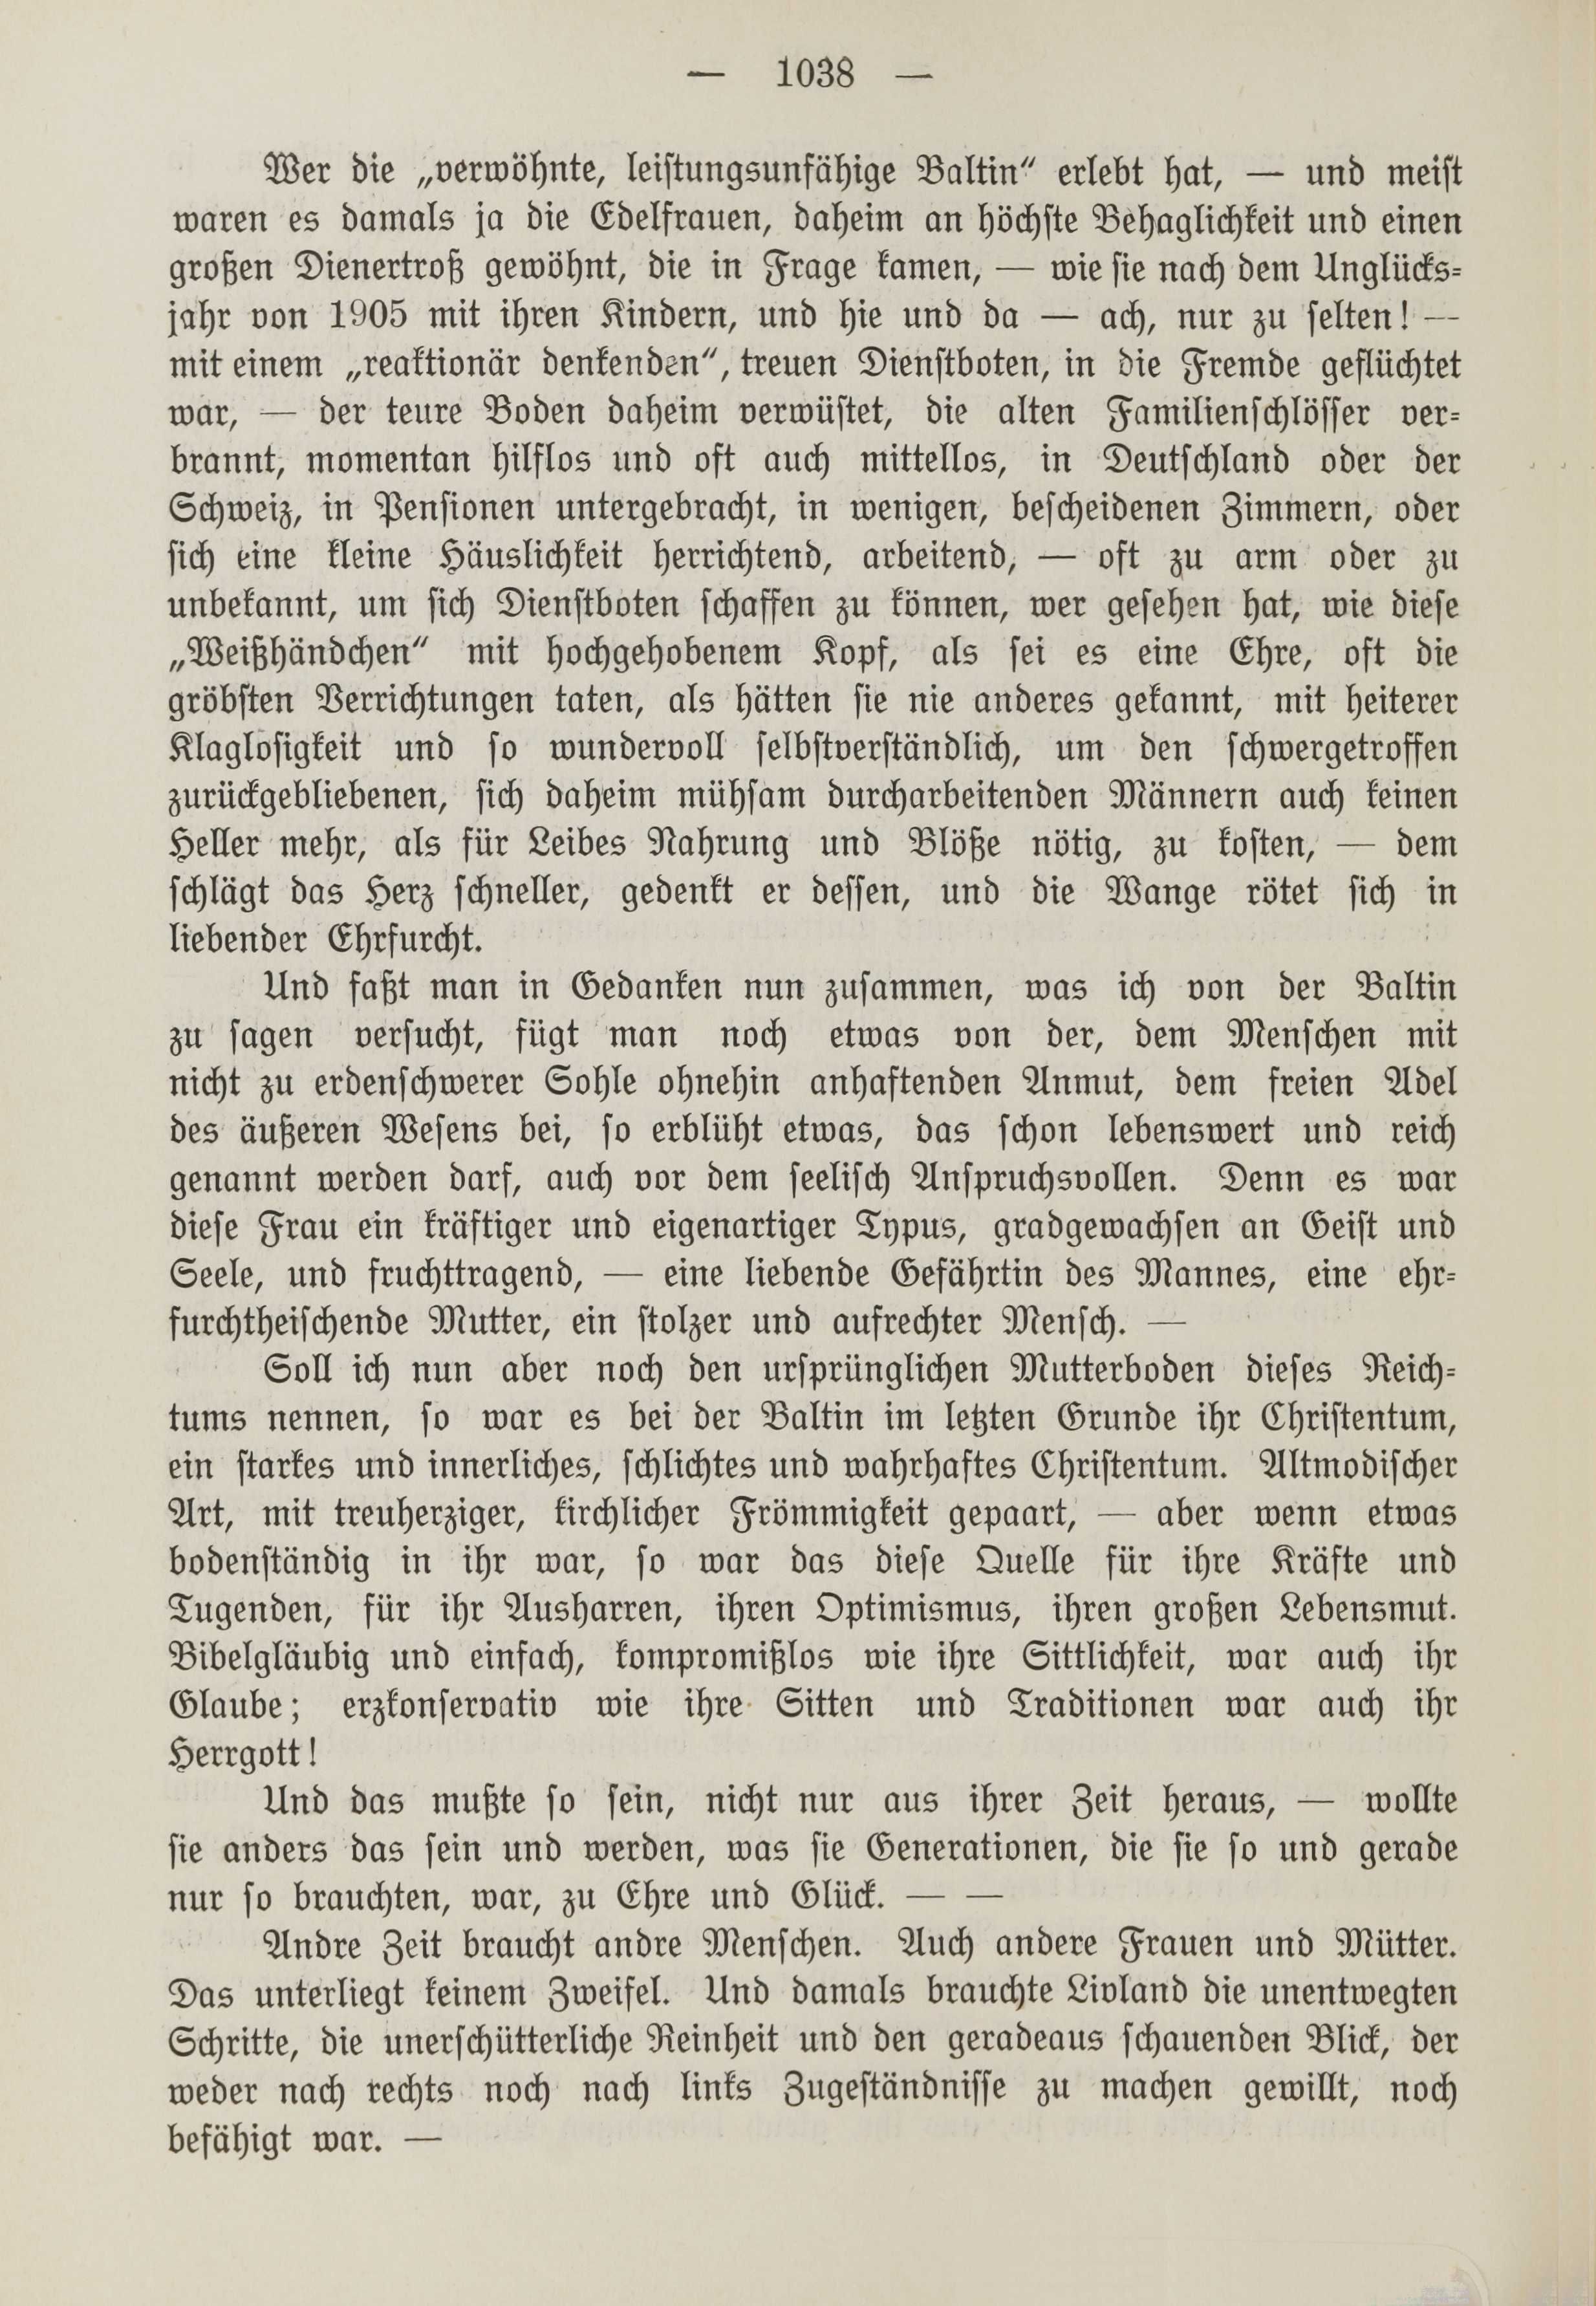 Deutsche Monatsschrift für Russland [1] (1912) | 1046. (1038) Main body of text